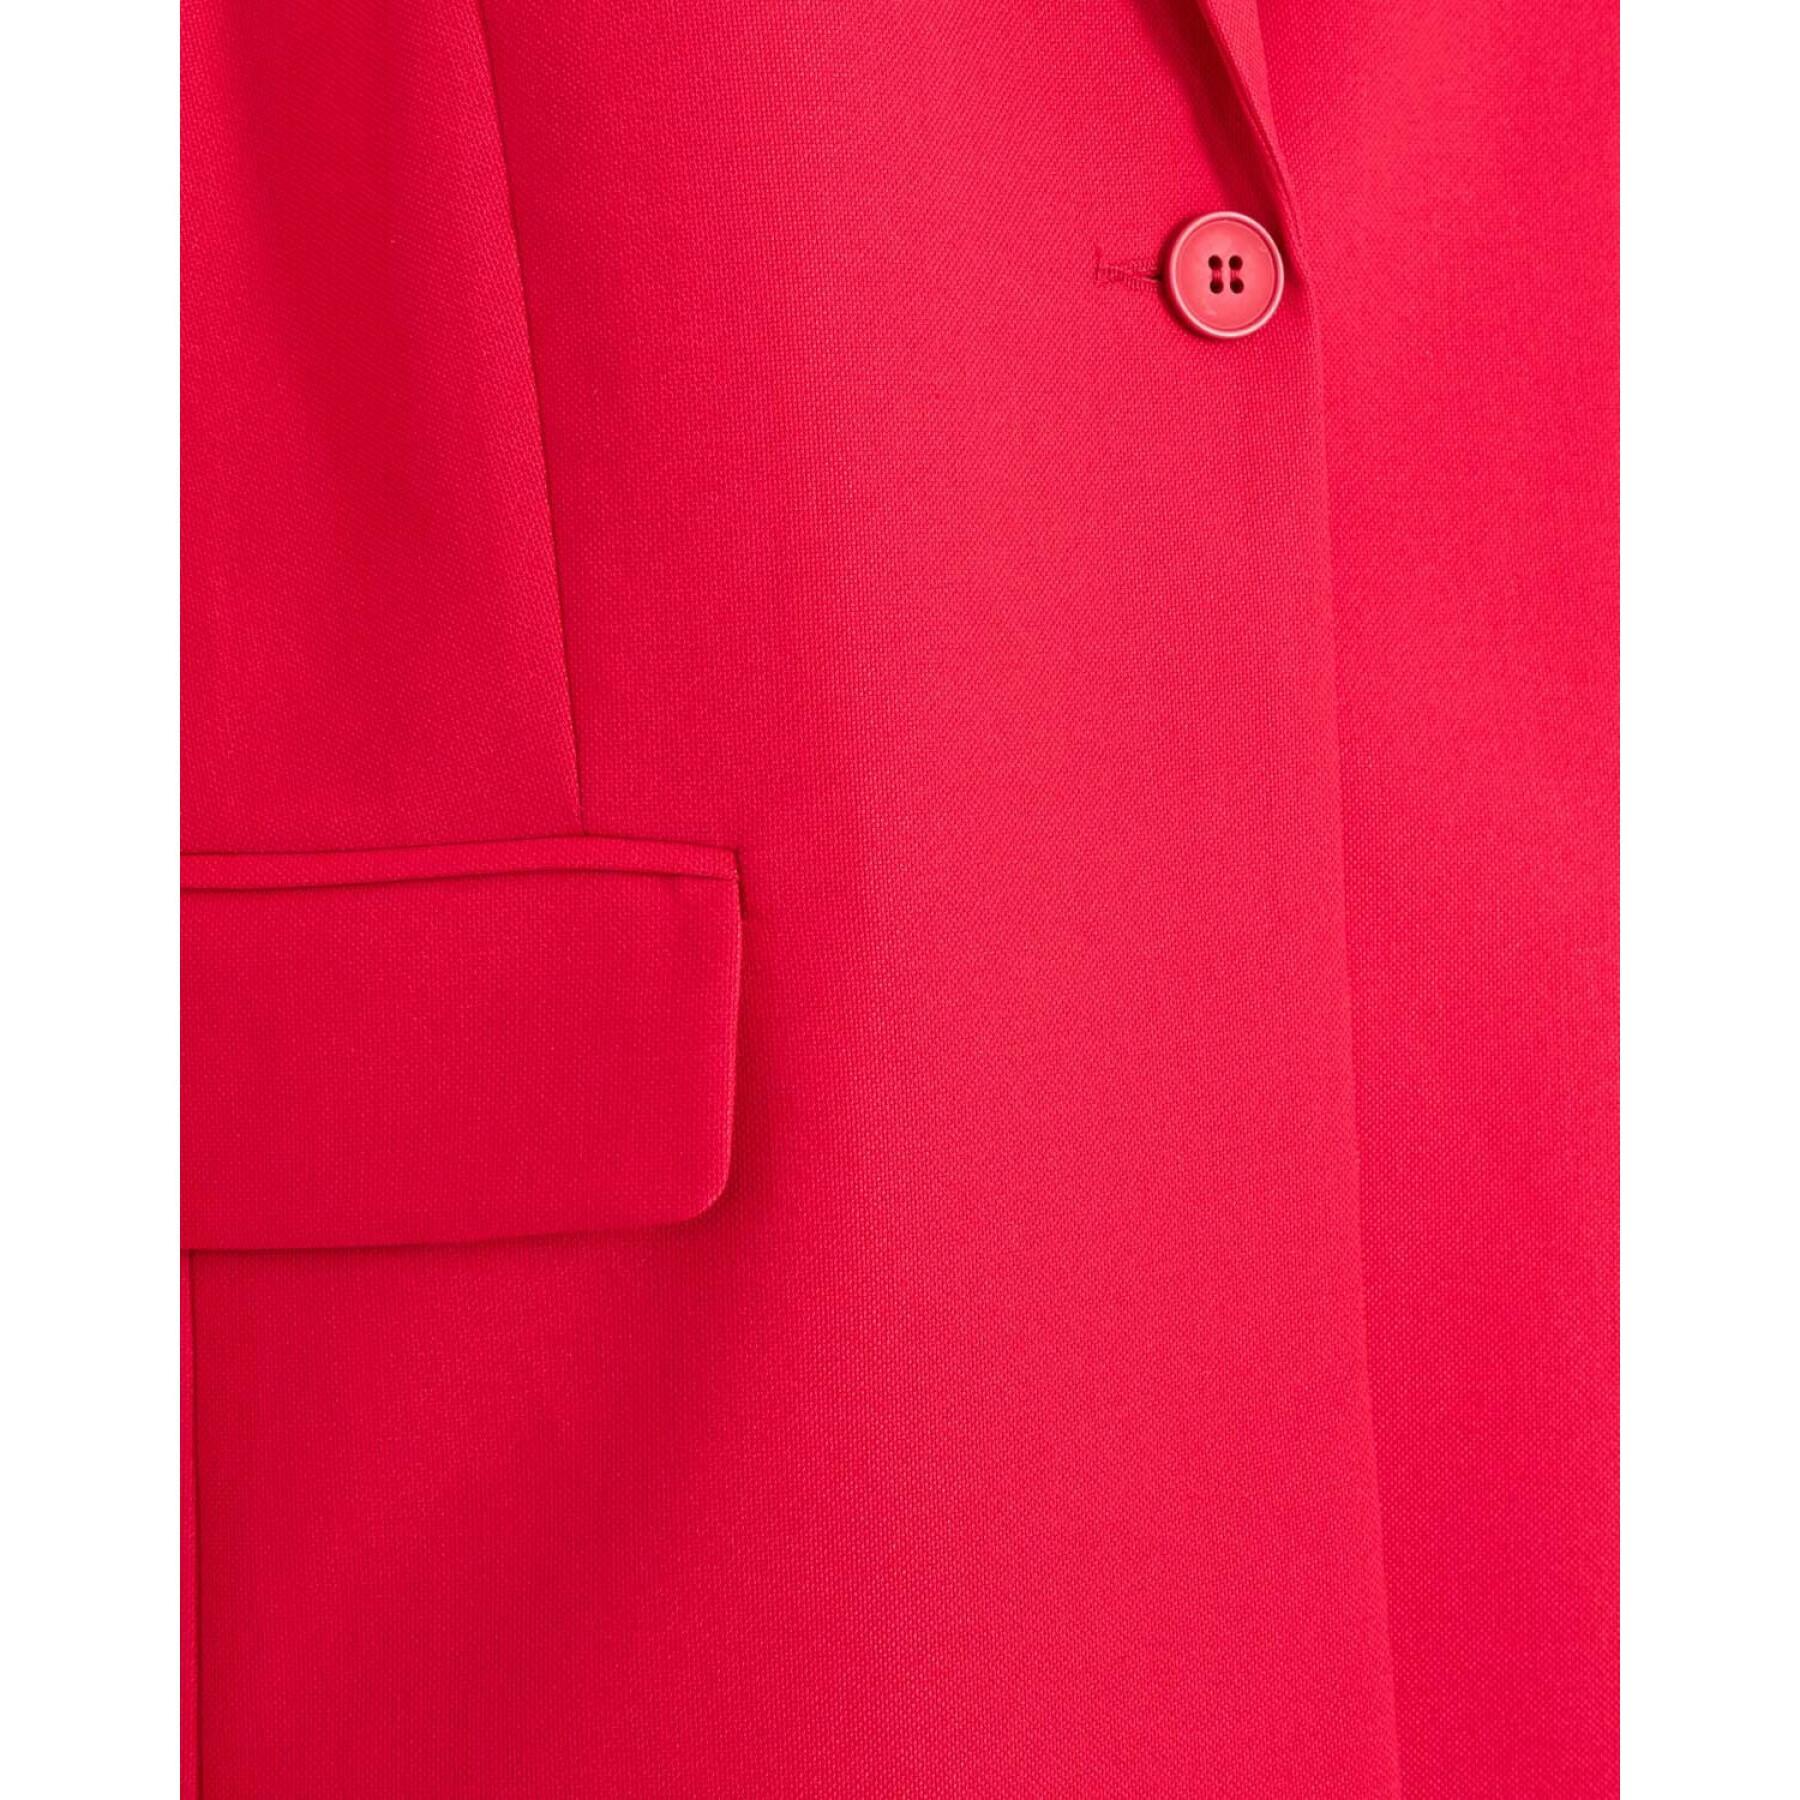 Women's blazer Minimum Arky 9263